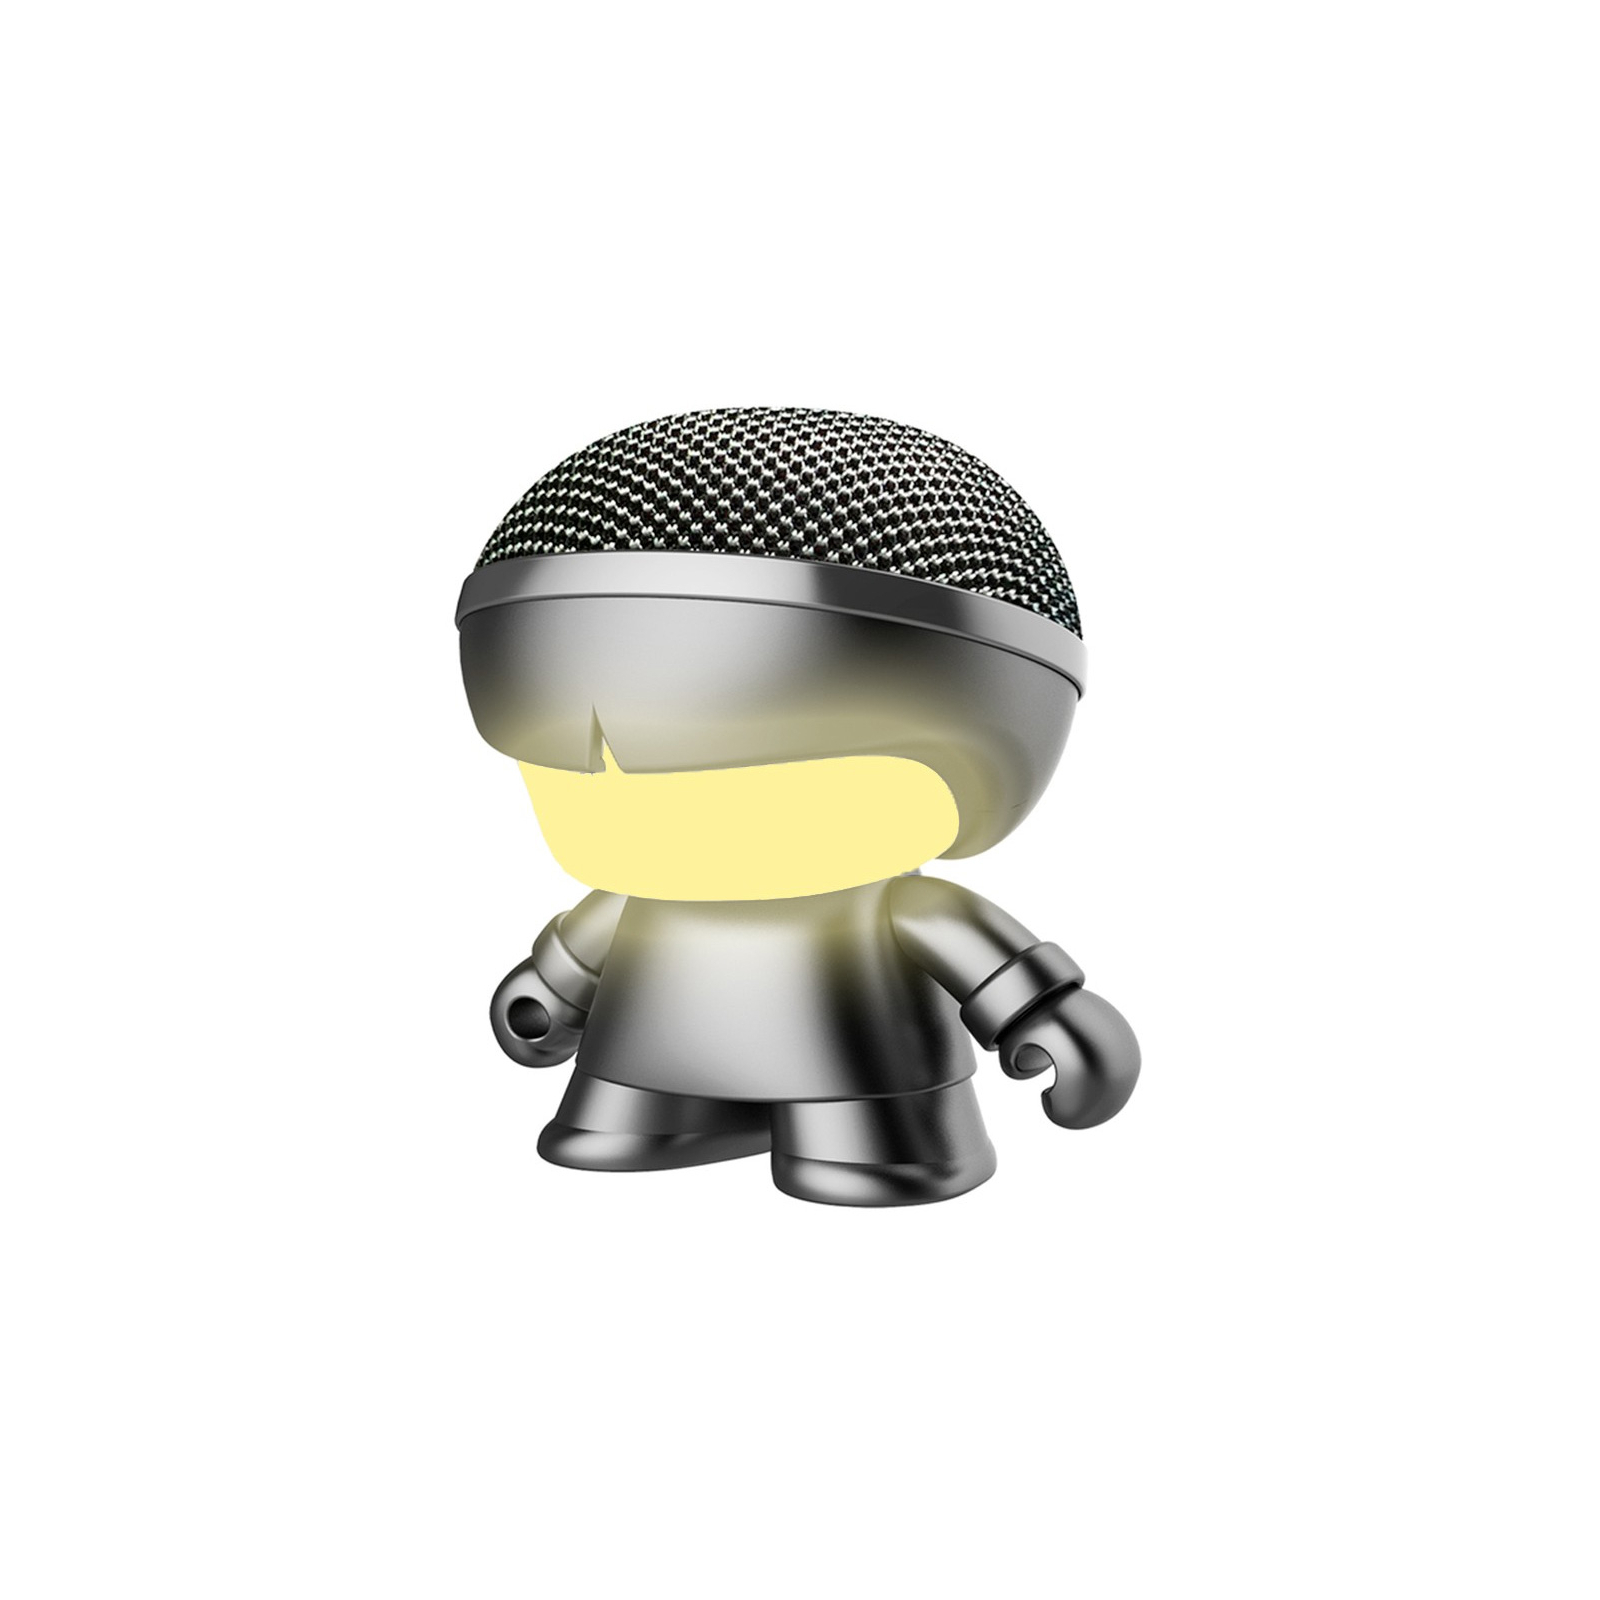 Интерактивная игрушка Xoopar Акустическая система Mini Xboy Металлик Black (XBOY81001.21М) изображение 2